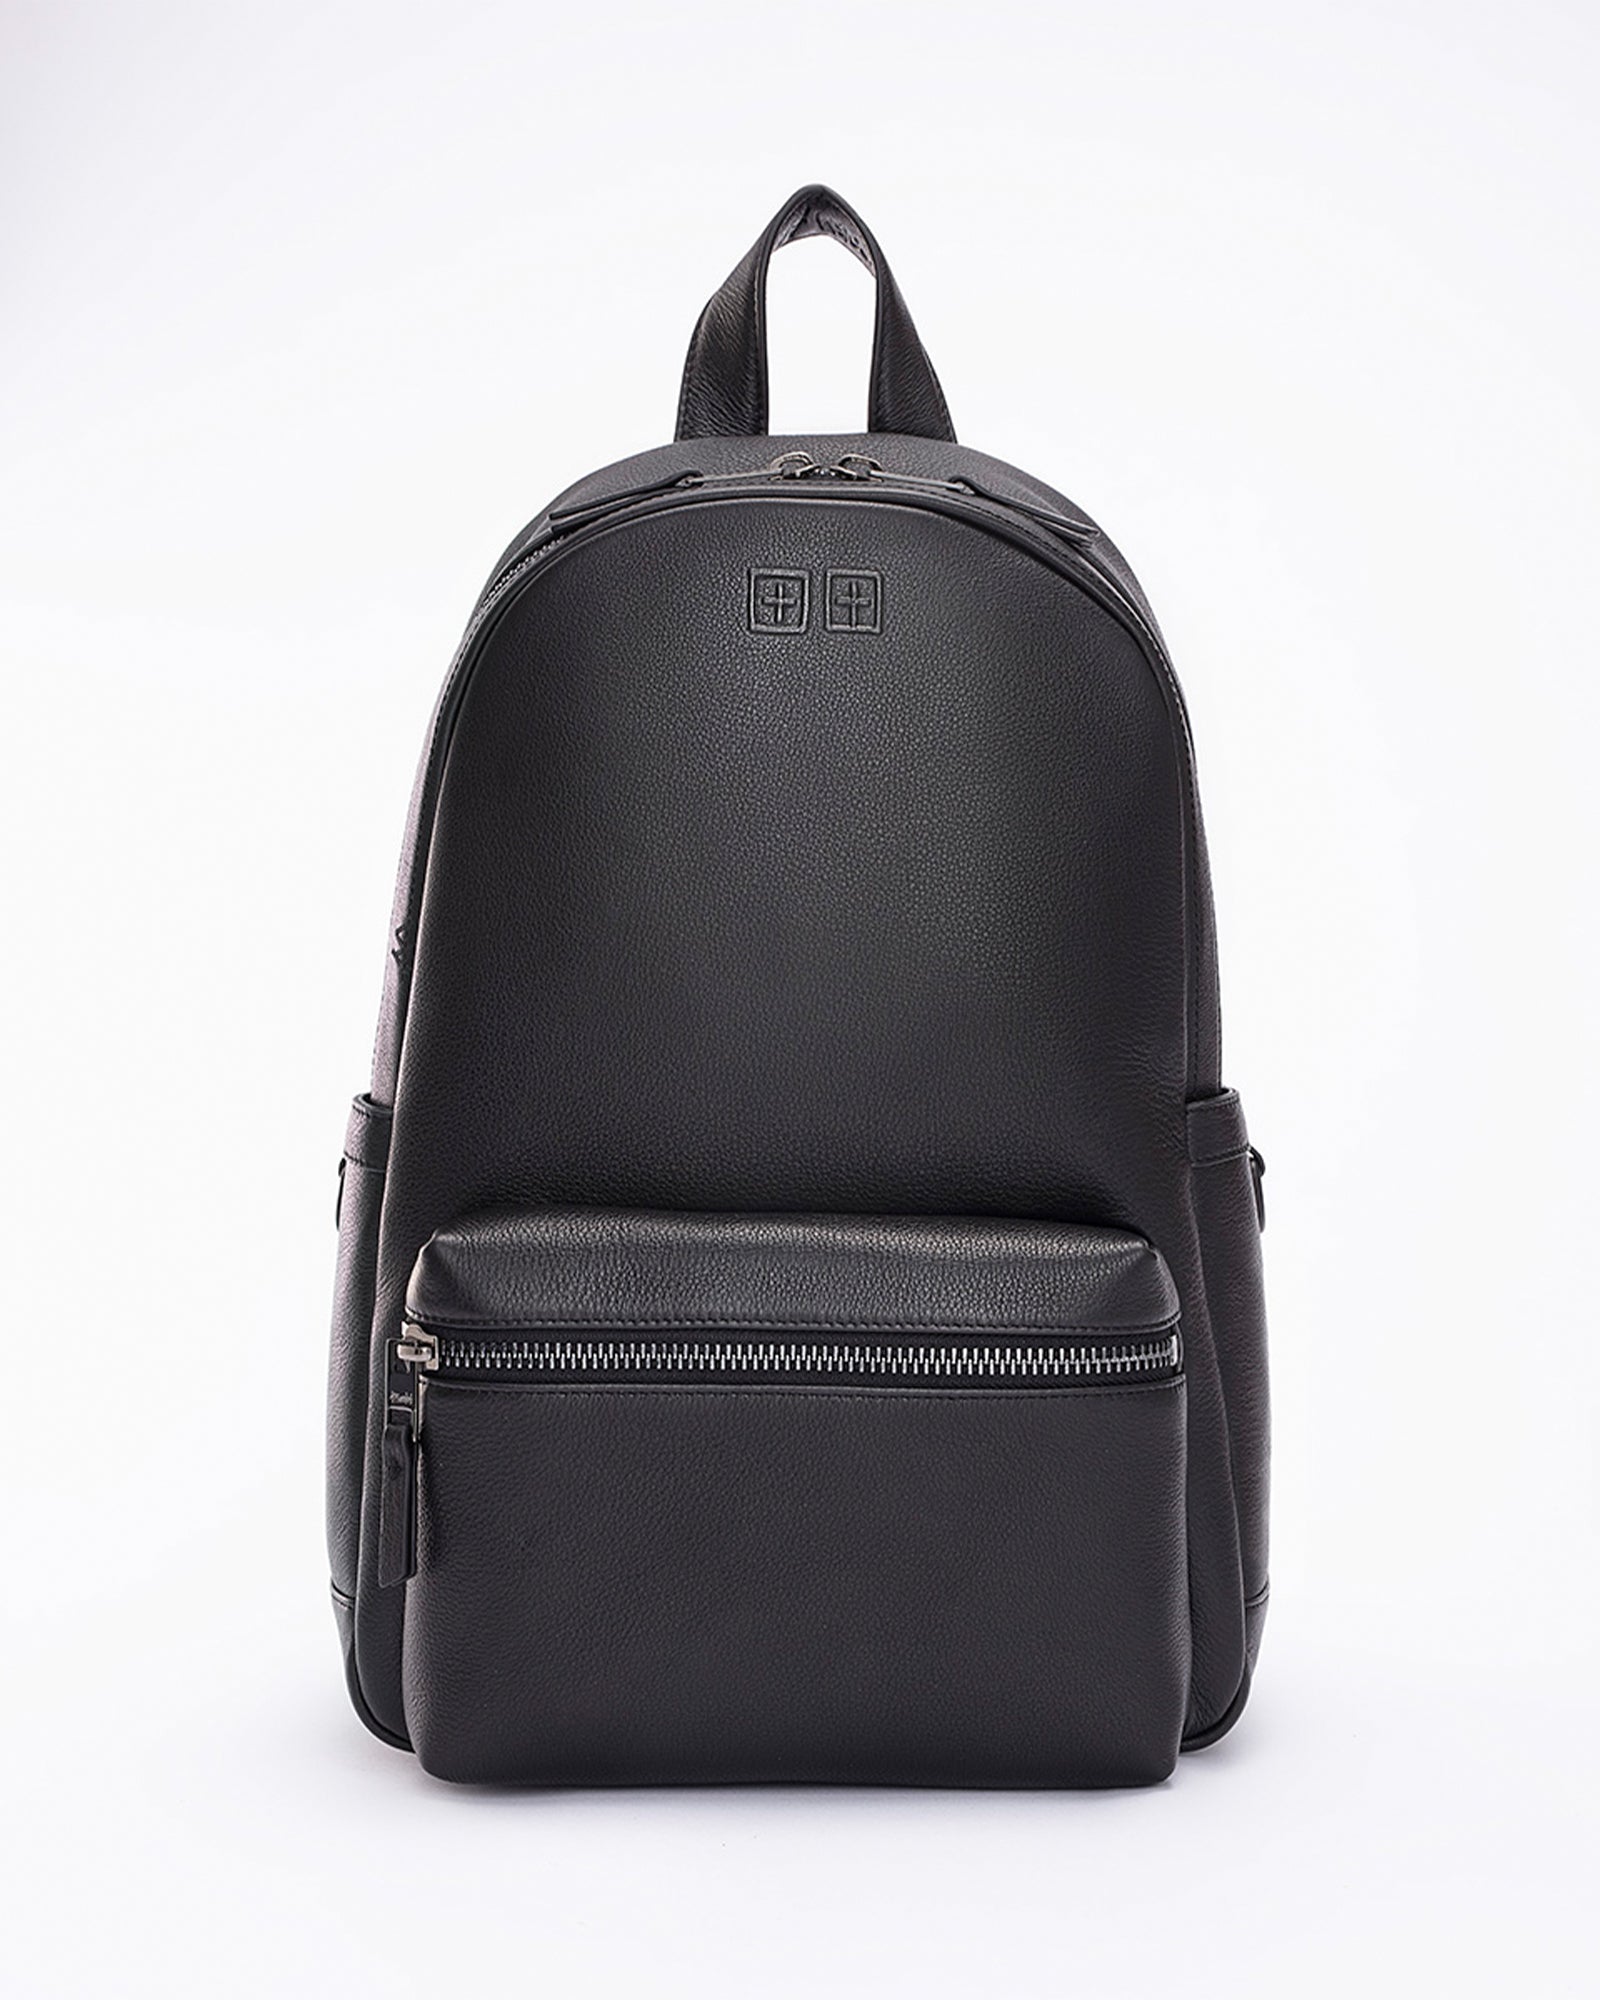 Bags | Leather & Nylon Handbags, Tote Bags & More | Ksubi | Ksubi ++